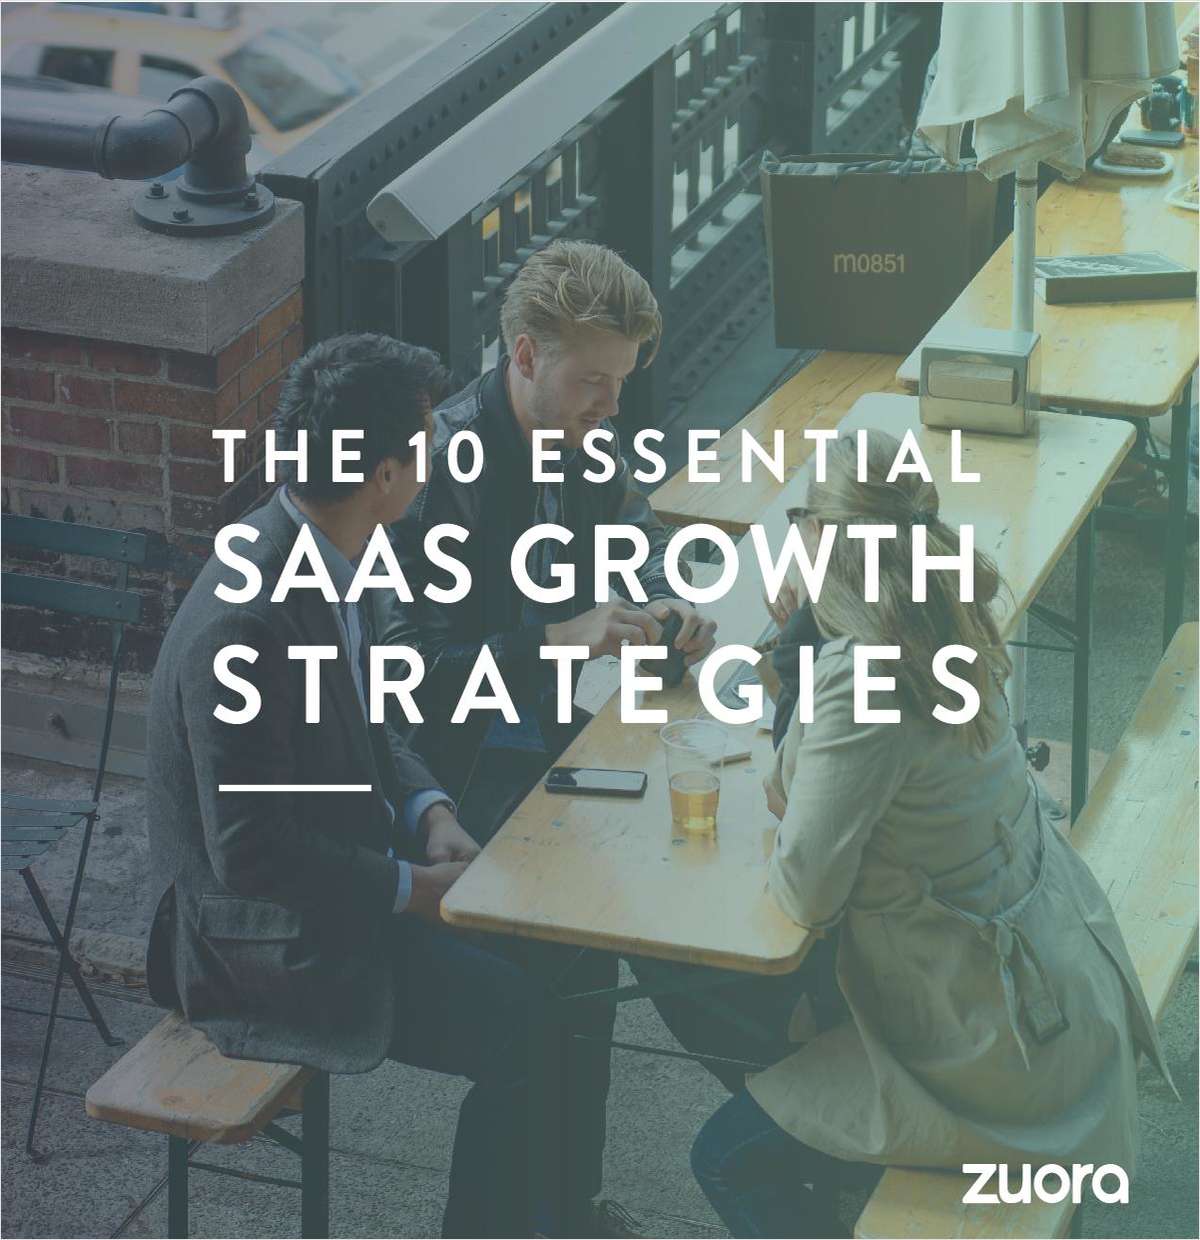 The 10 Essential SaaS Growth Strategies